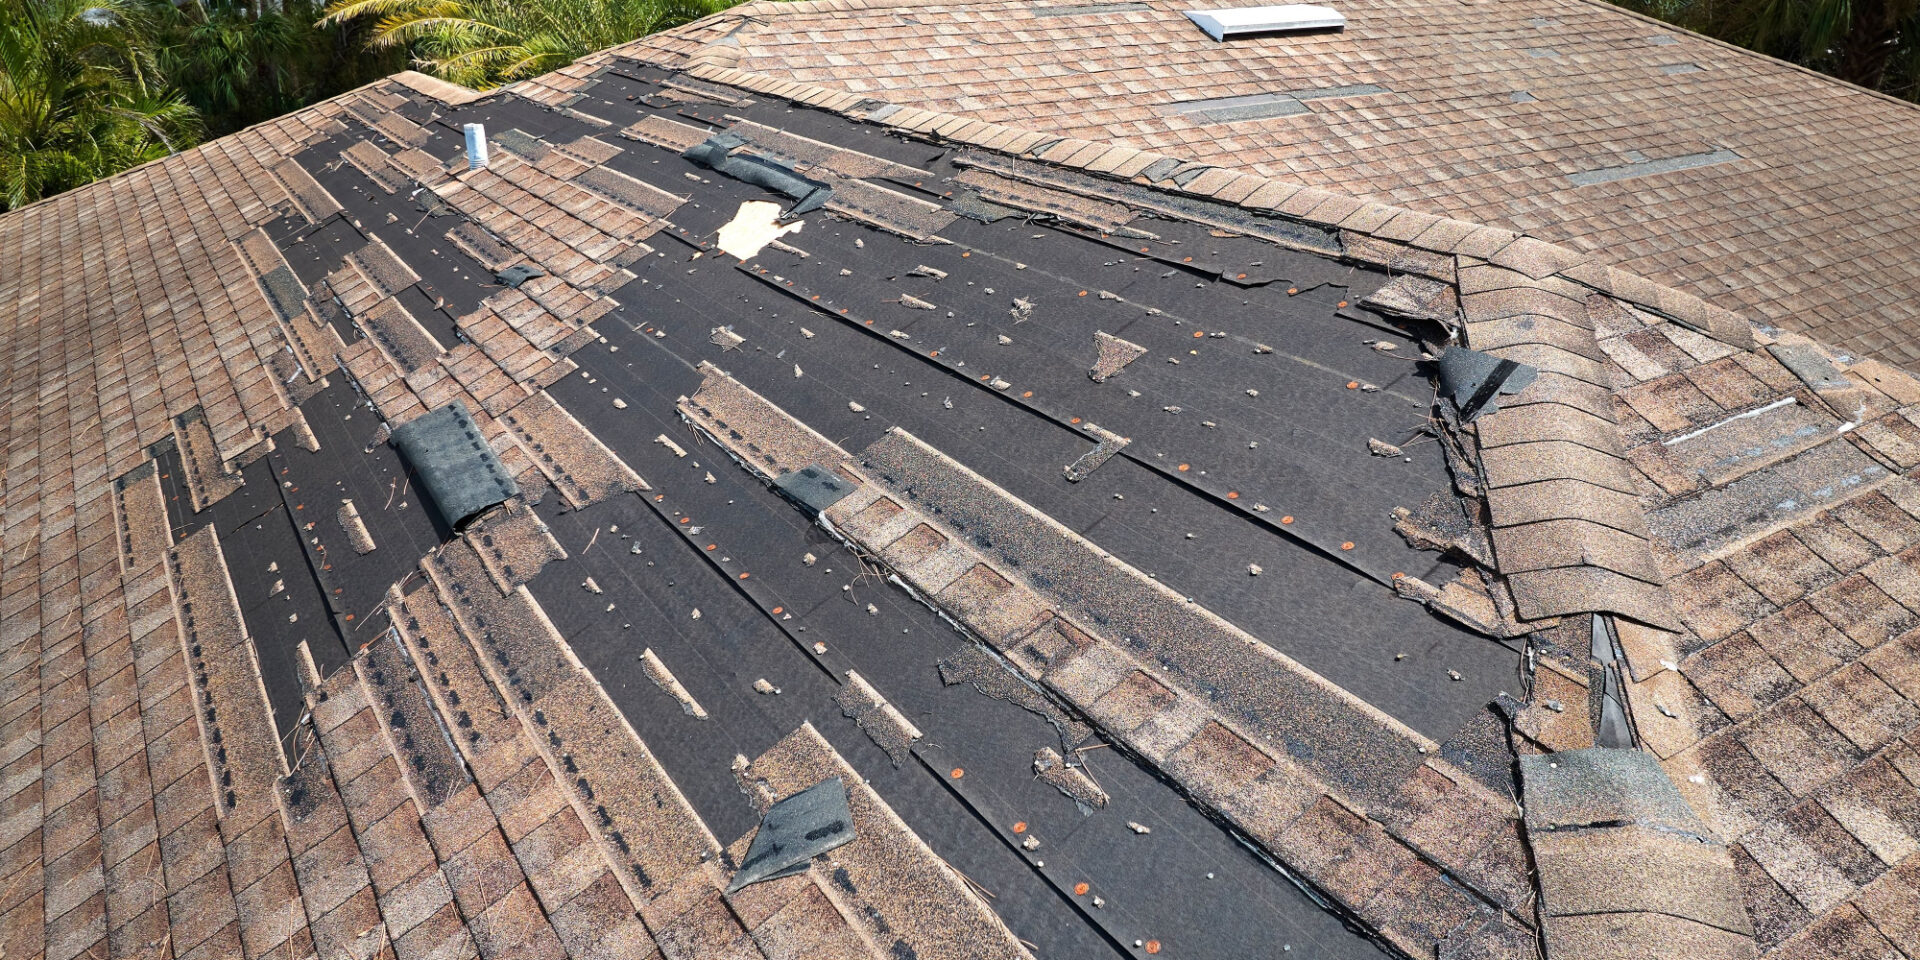 Roof Repair Professionals in Tampa